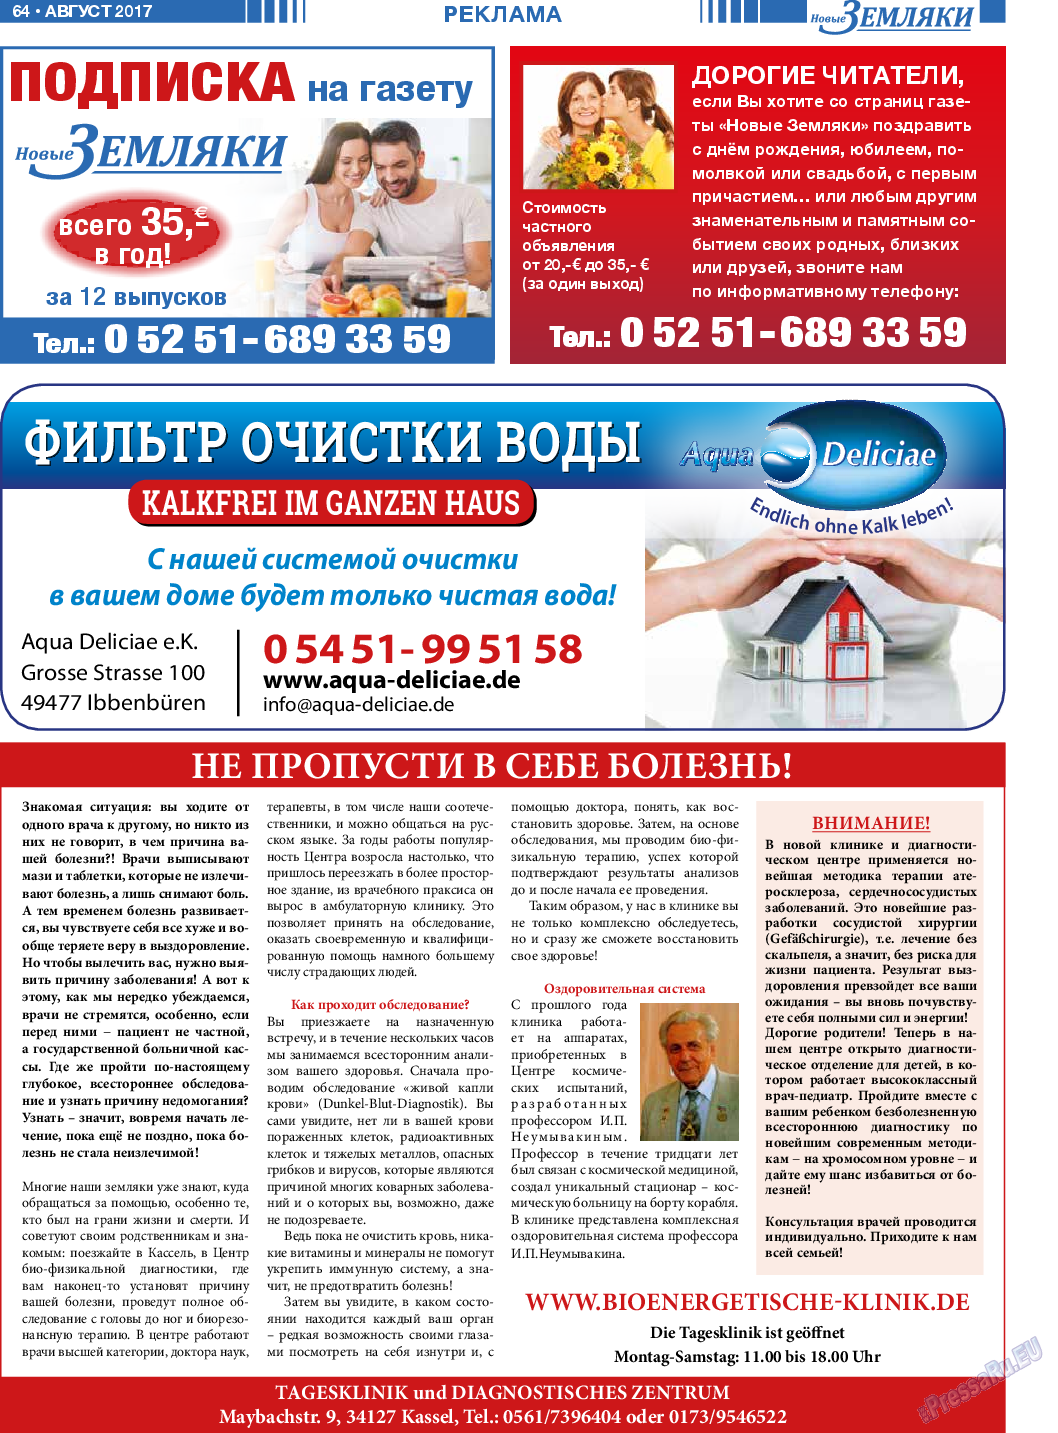 Новые Земляки, газета. 2017 №8 стр.64